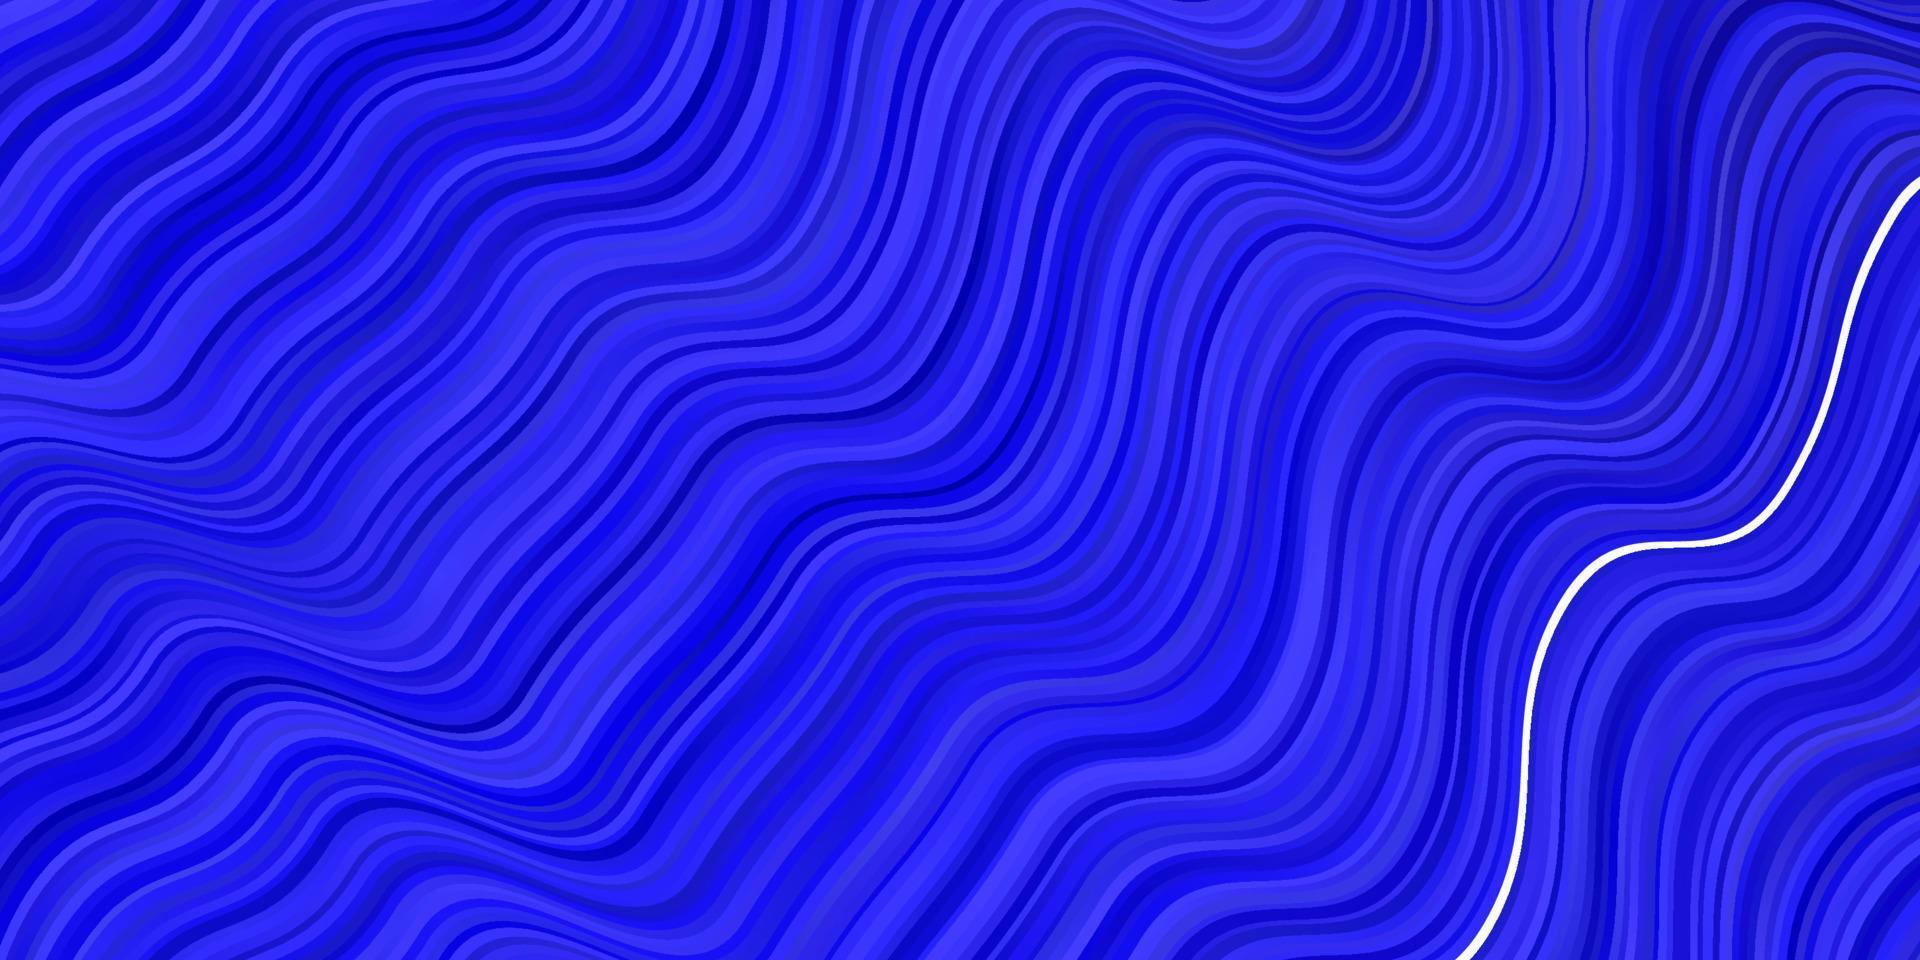 toile de fond de vecteur bleu foncé avec des lignes pliées.